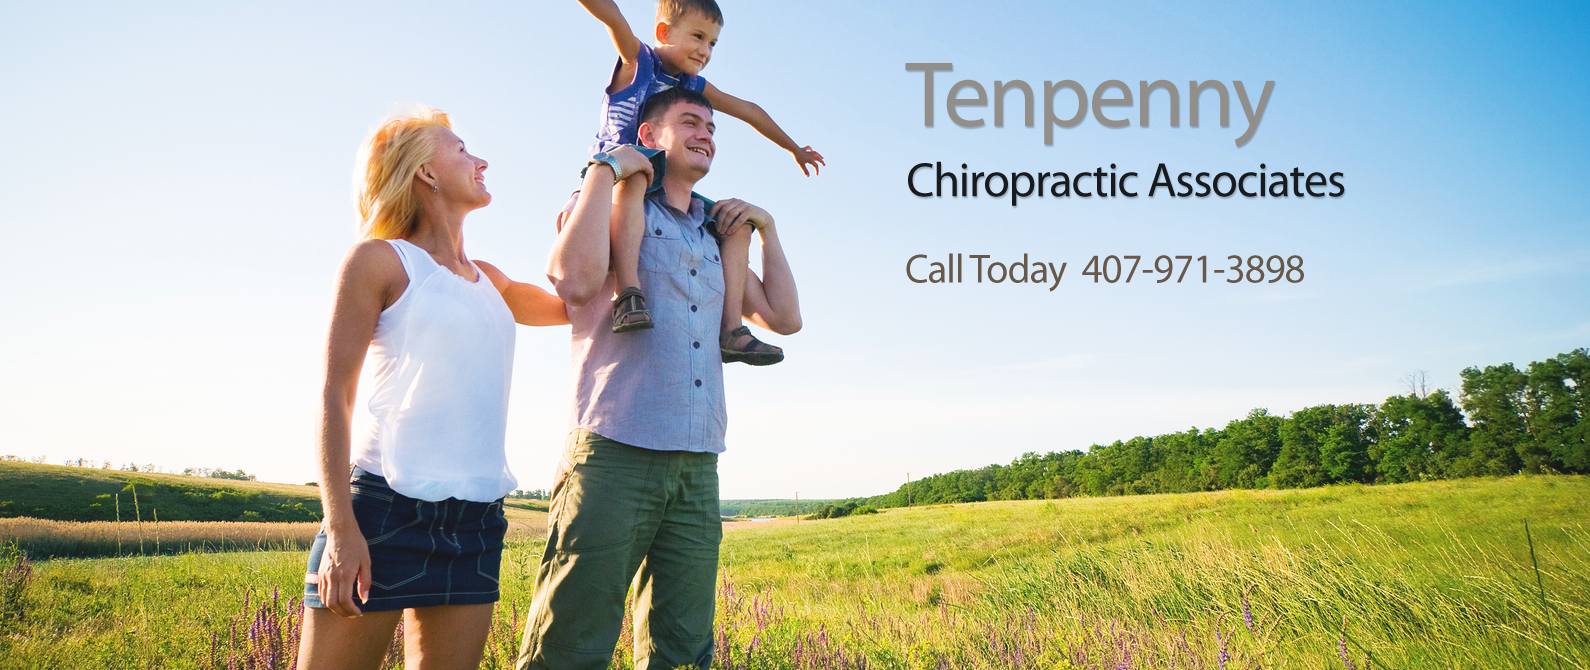 Tenpenny Chiropractic Associates